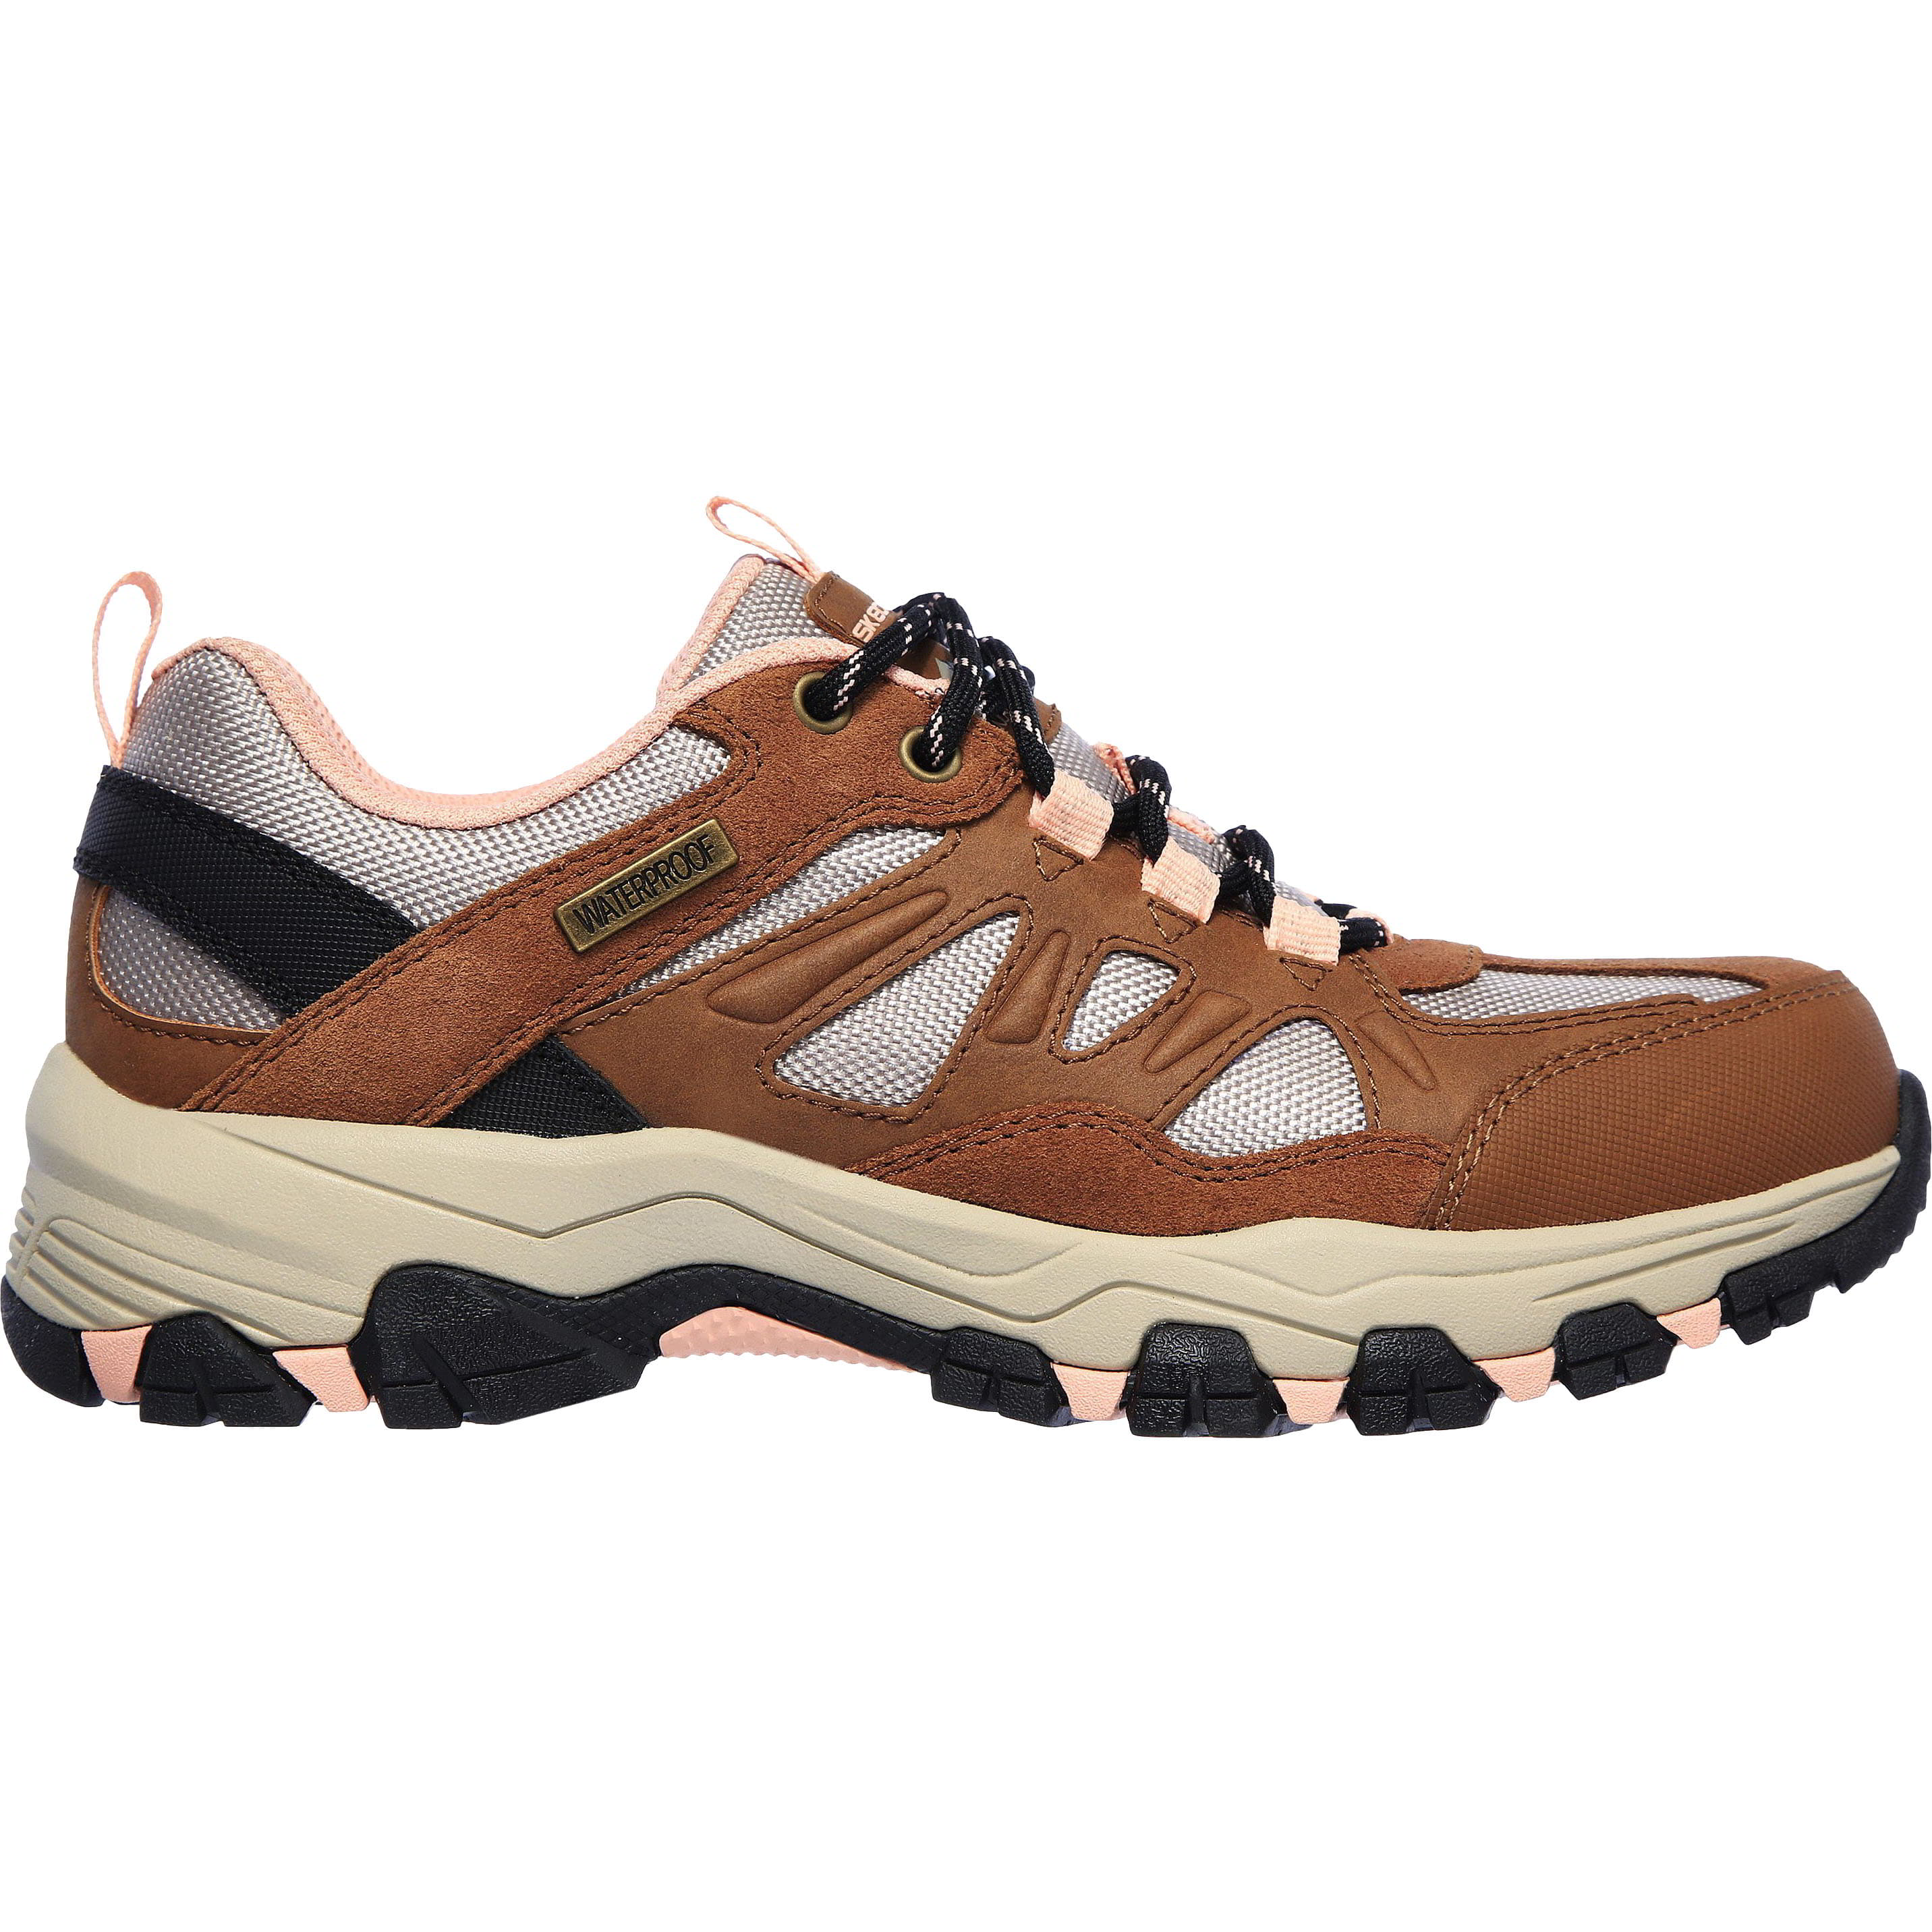 Skechers Womens Selment West Highland Waterproof Walking Shoes Trainers - UK 6 Brown 2951